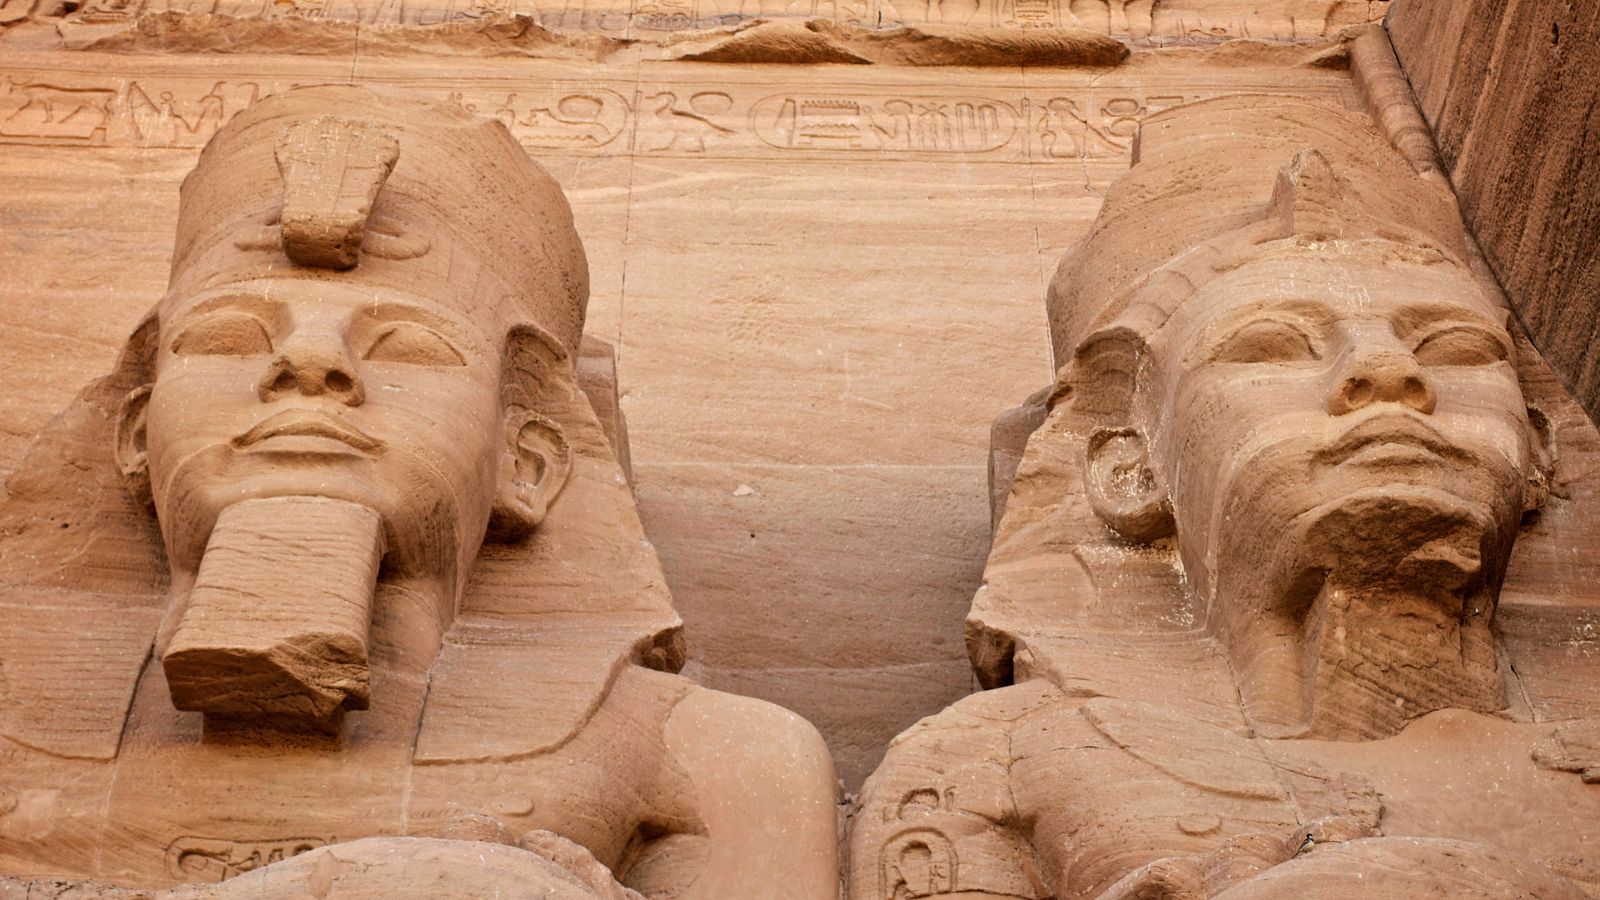 سويسرا تعيد رأس تمثال رمسيس الثاني إلى مصر بعد استعادته بعد طول انتظار